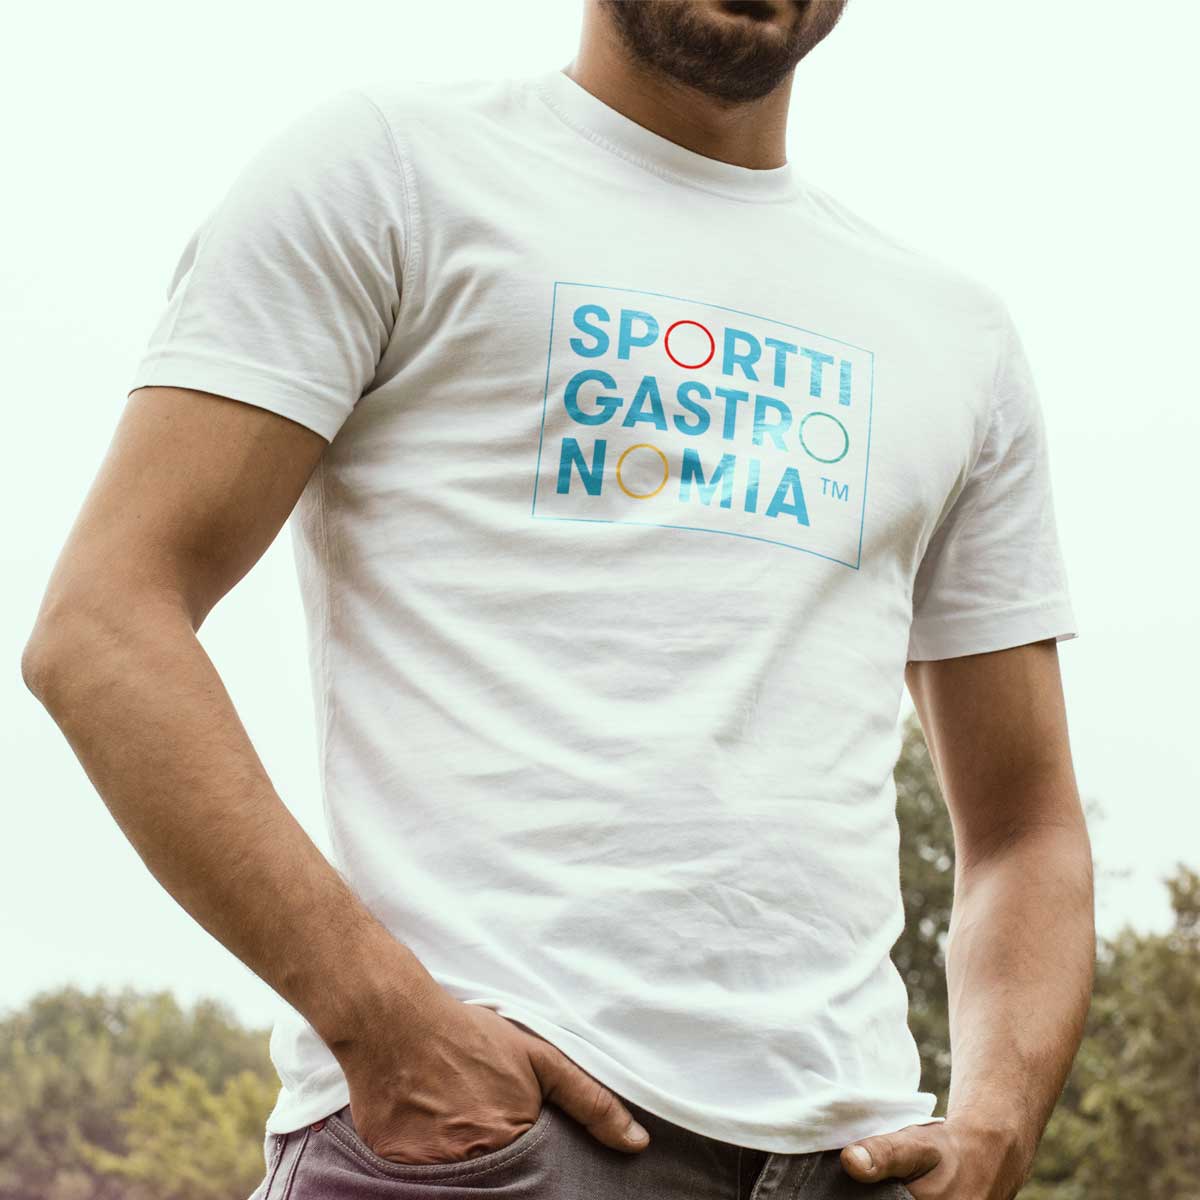 kuvituskuva: mies SporttiGastronomia -T-paidassa